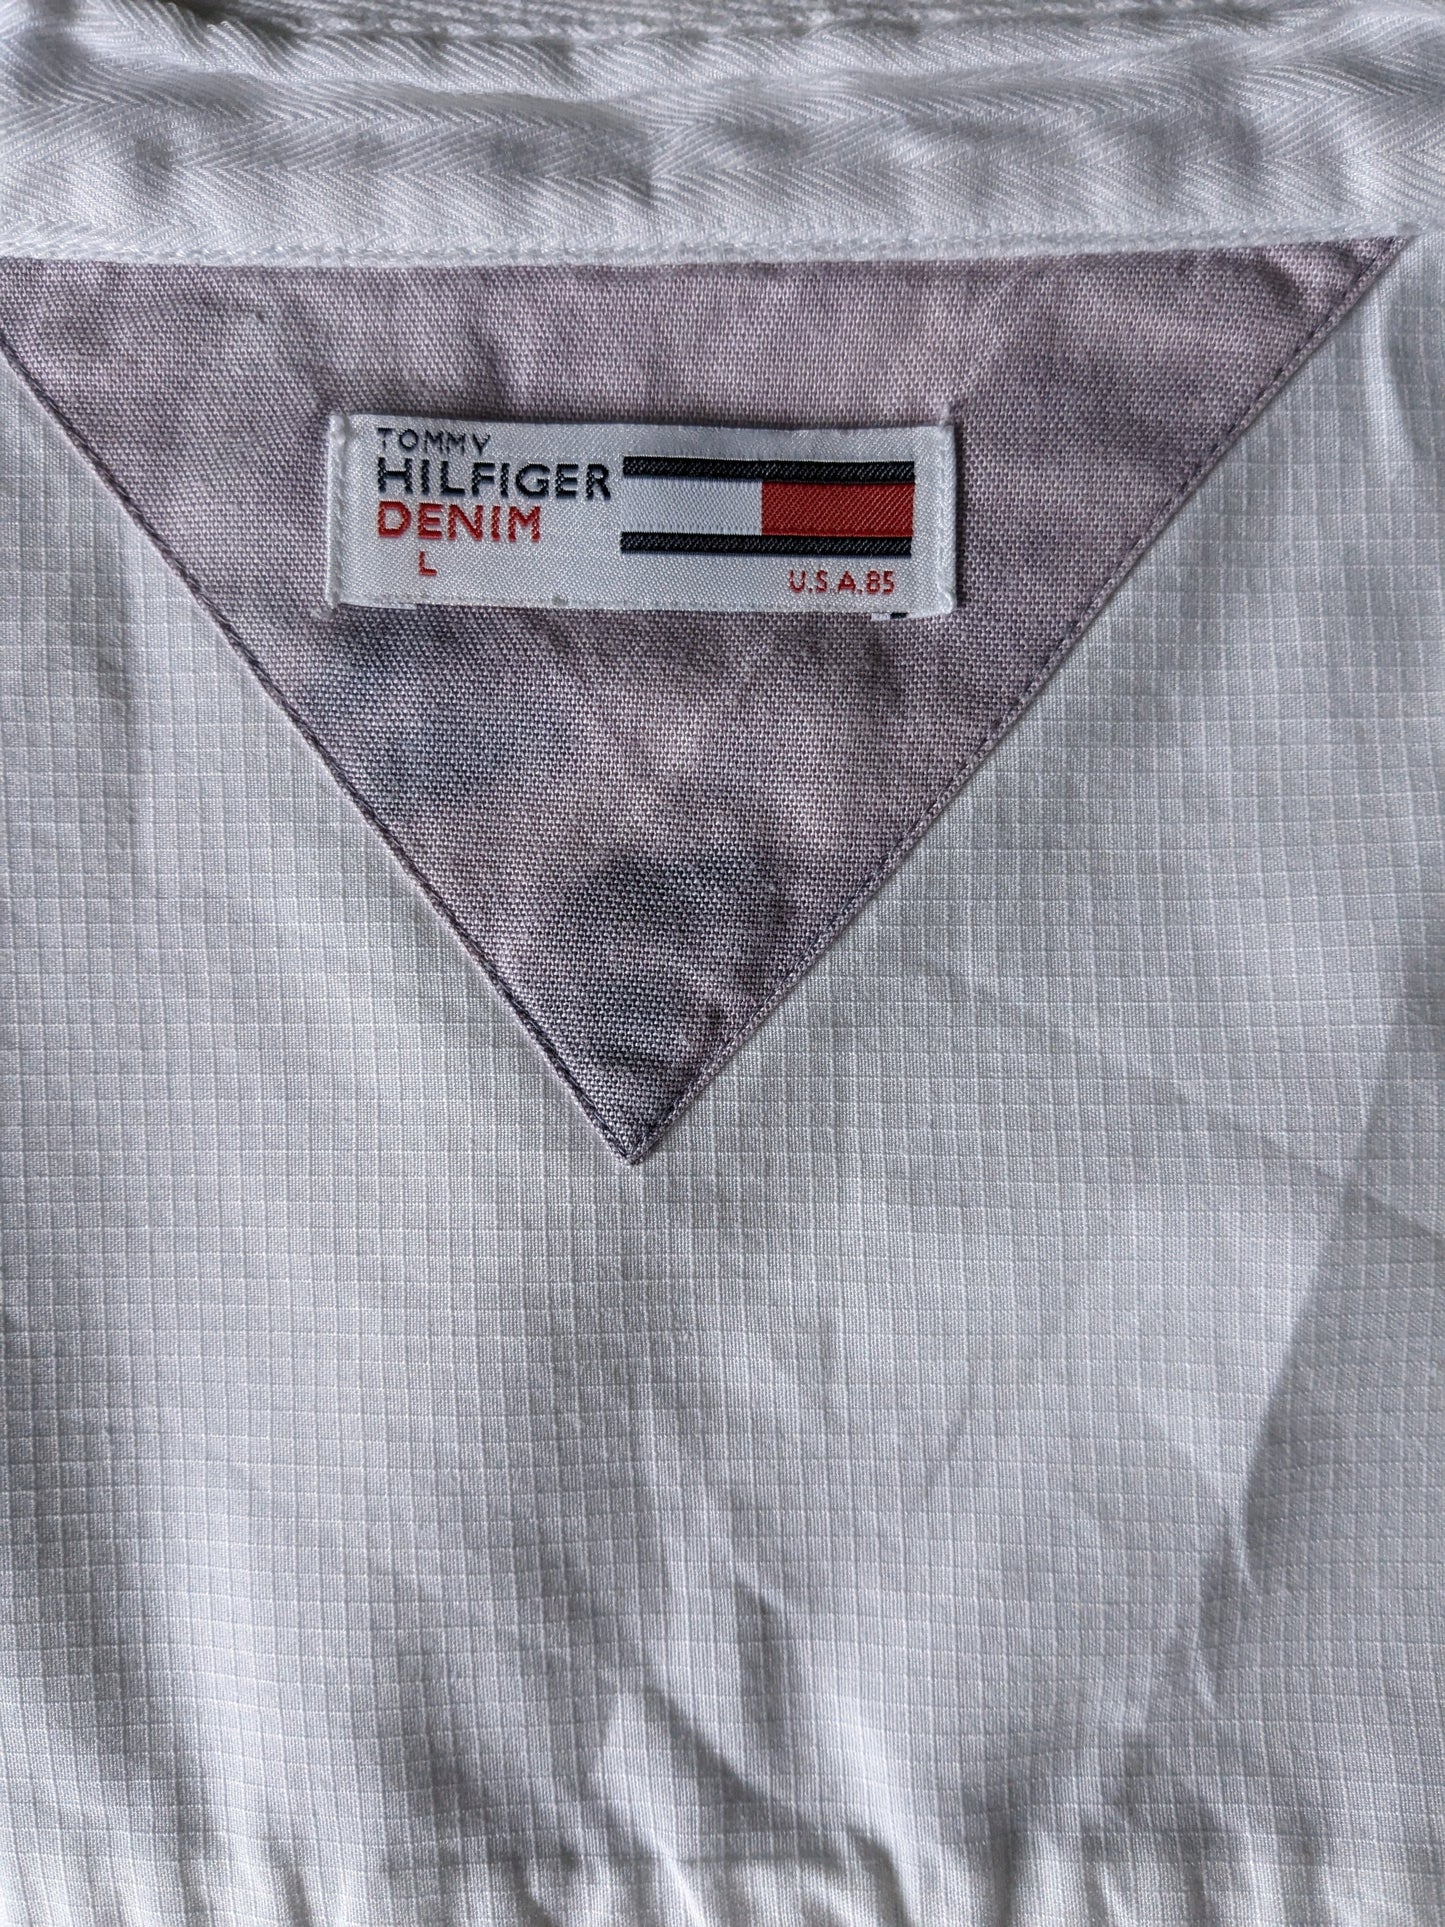 Camicia di denim Hilfiger con collare Mao / Standing. Bianco. Taglia L.